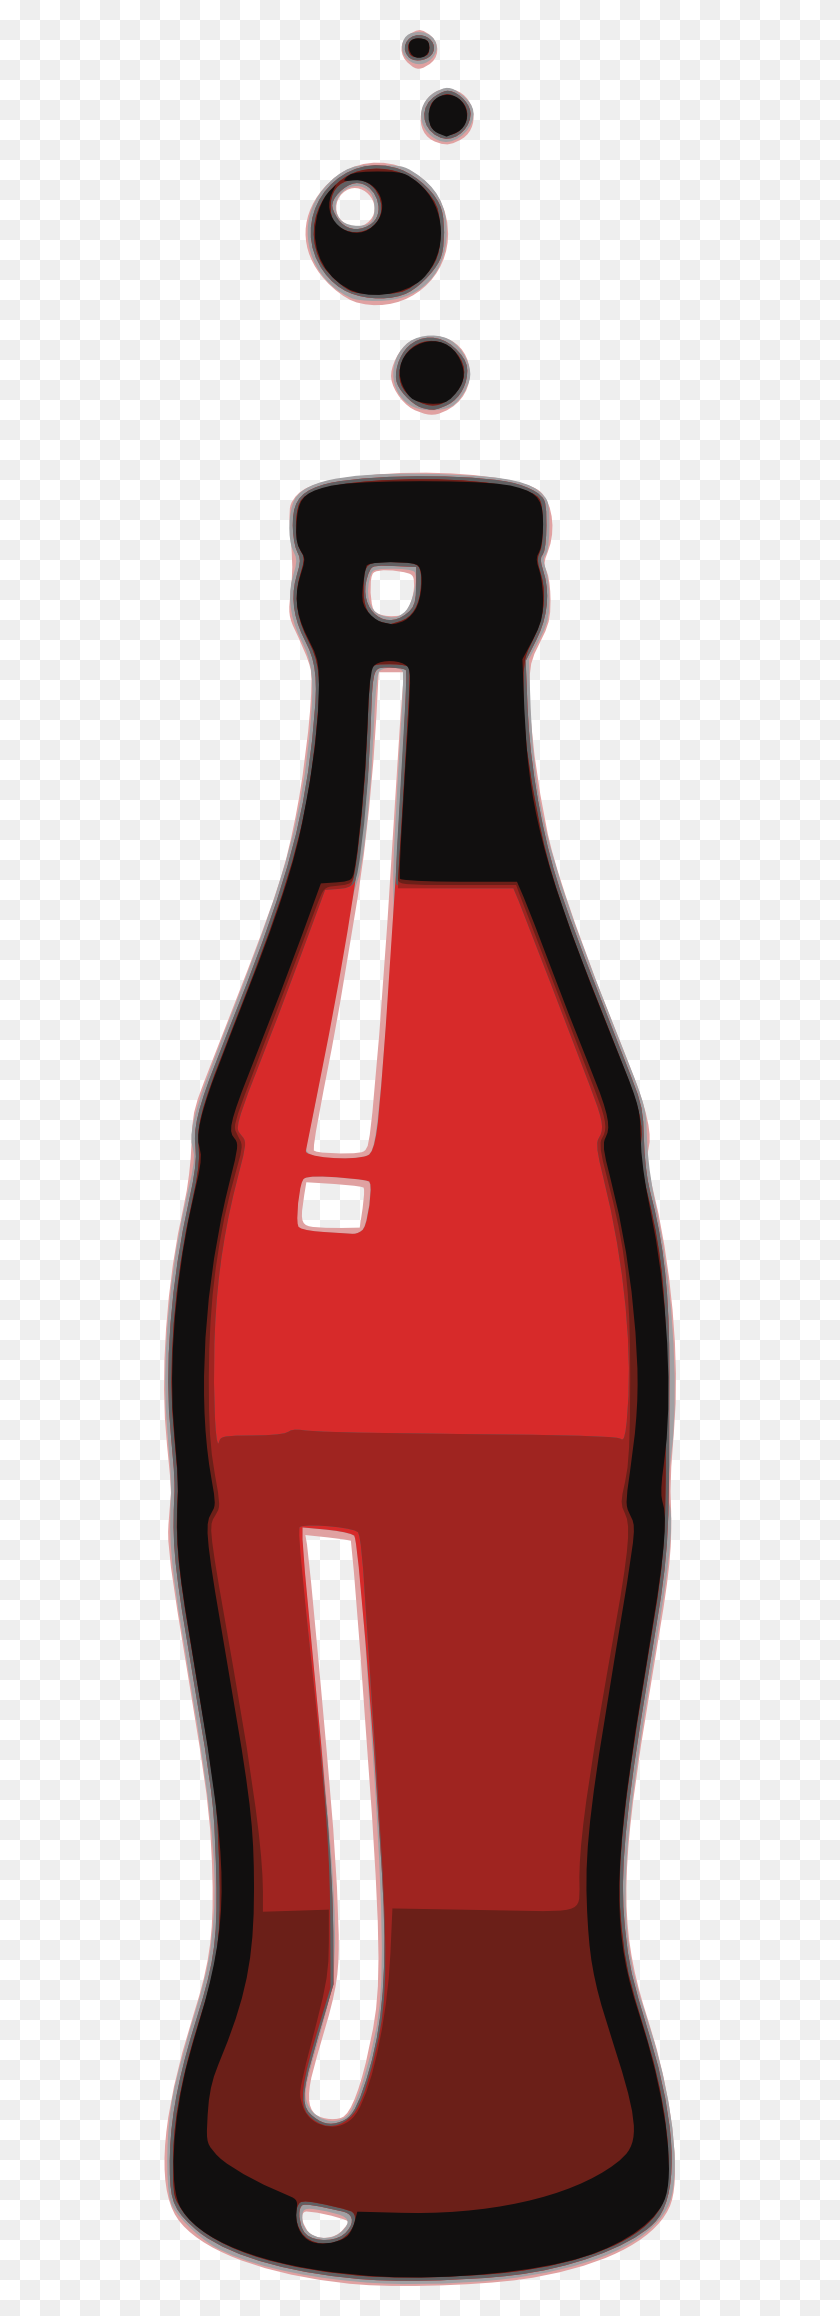 512x2256 Клипарт Бутылка Кока-Колы Картинки Изображения - Бутылка Пива Клипарт Черный И Белый